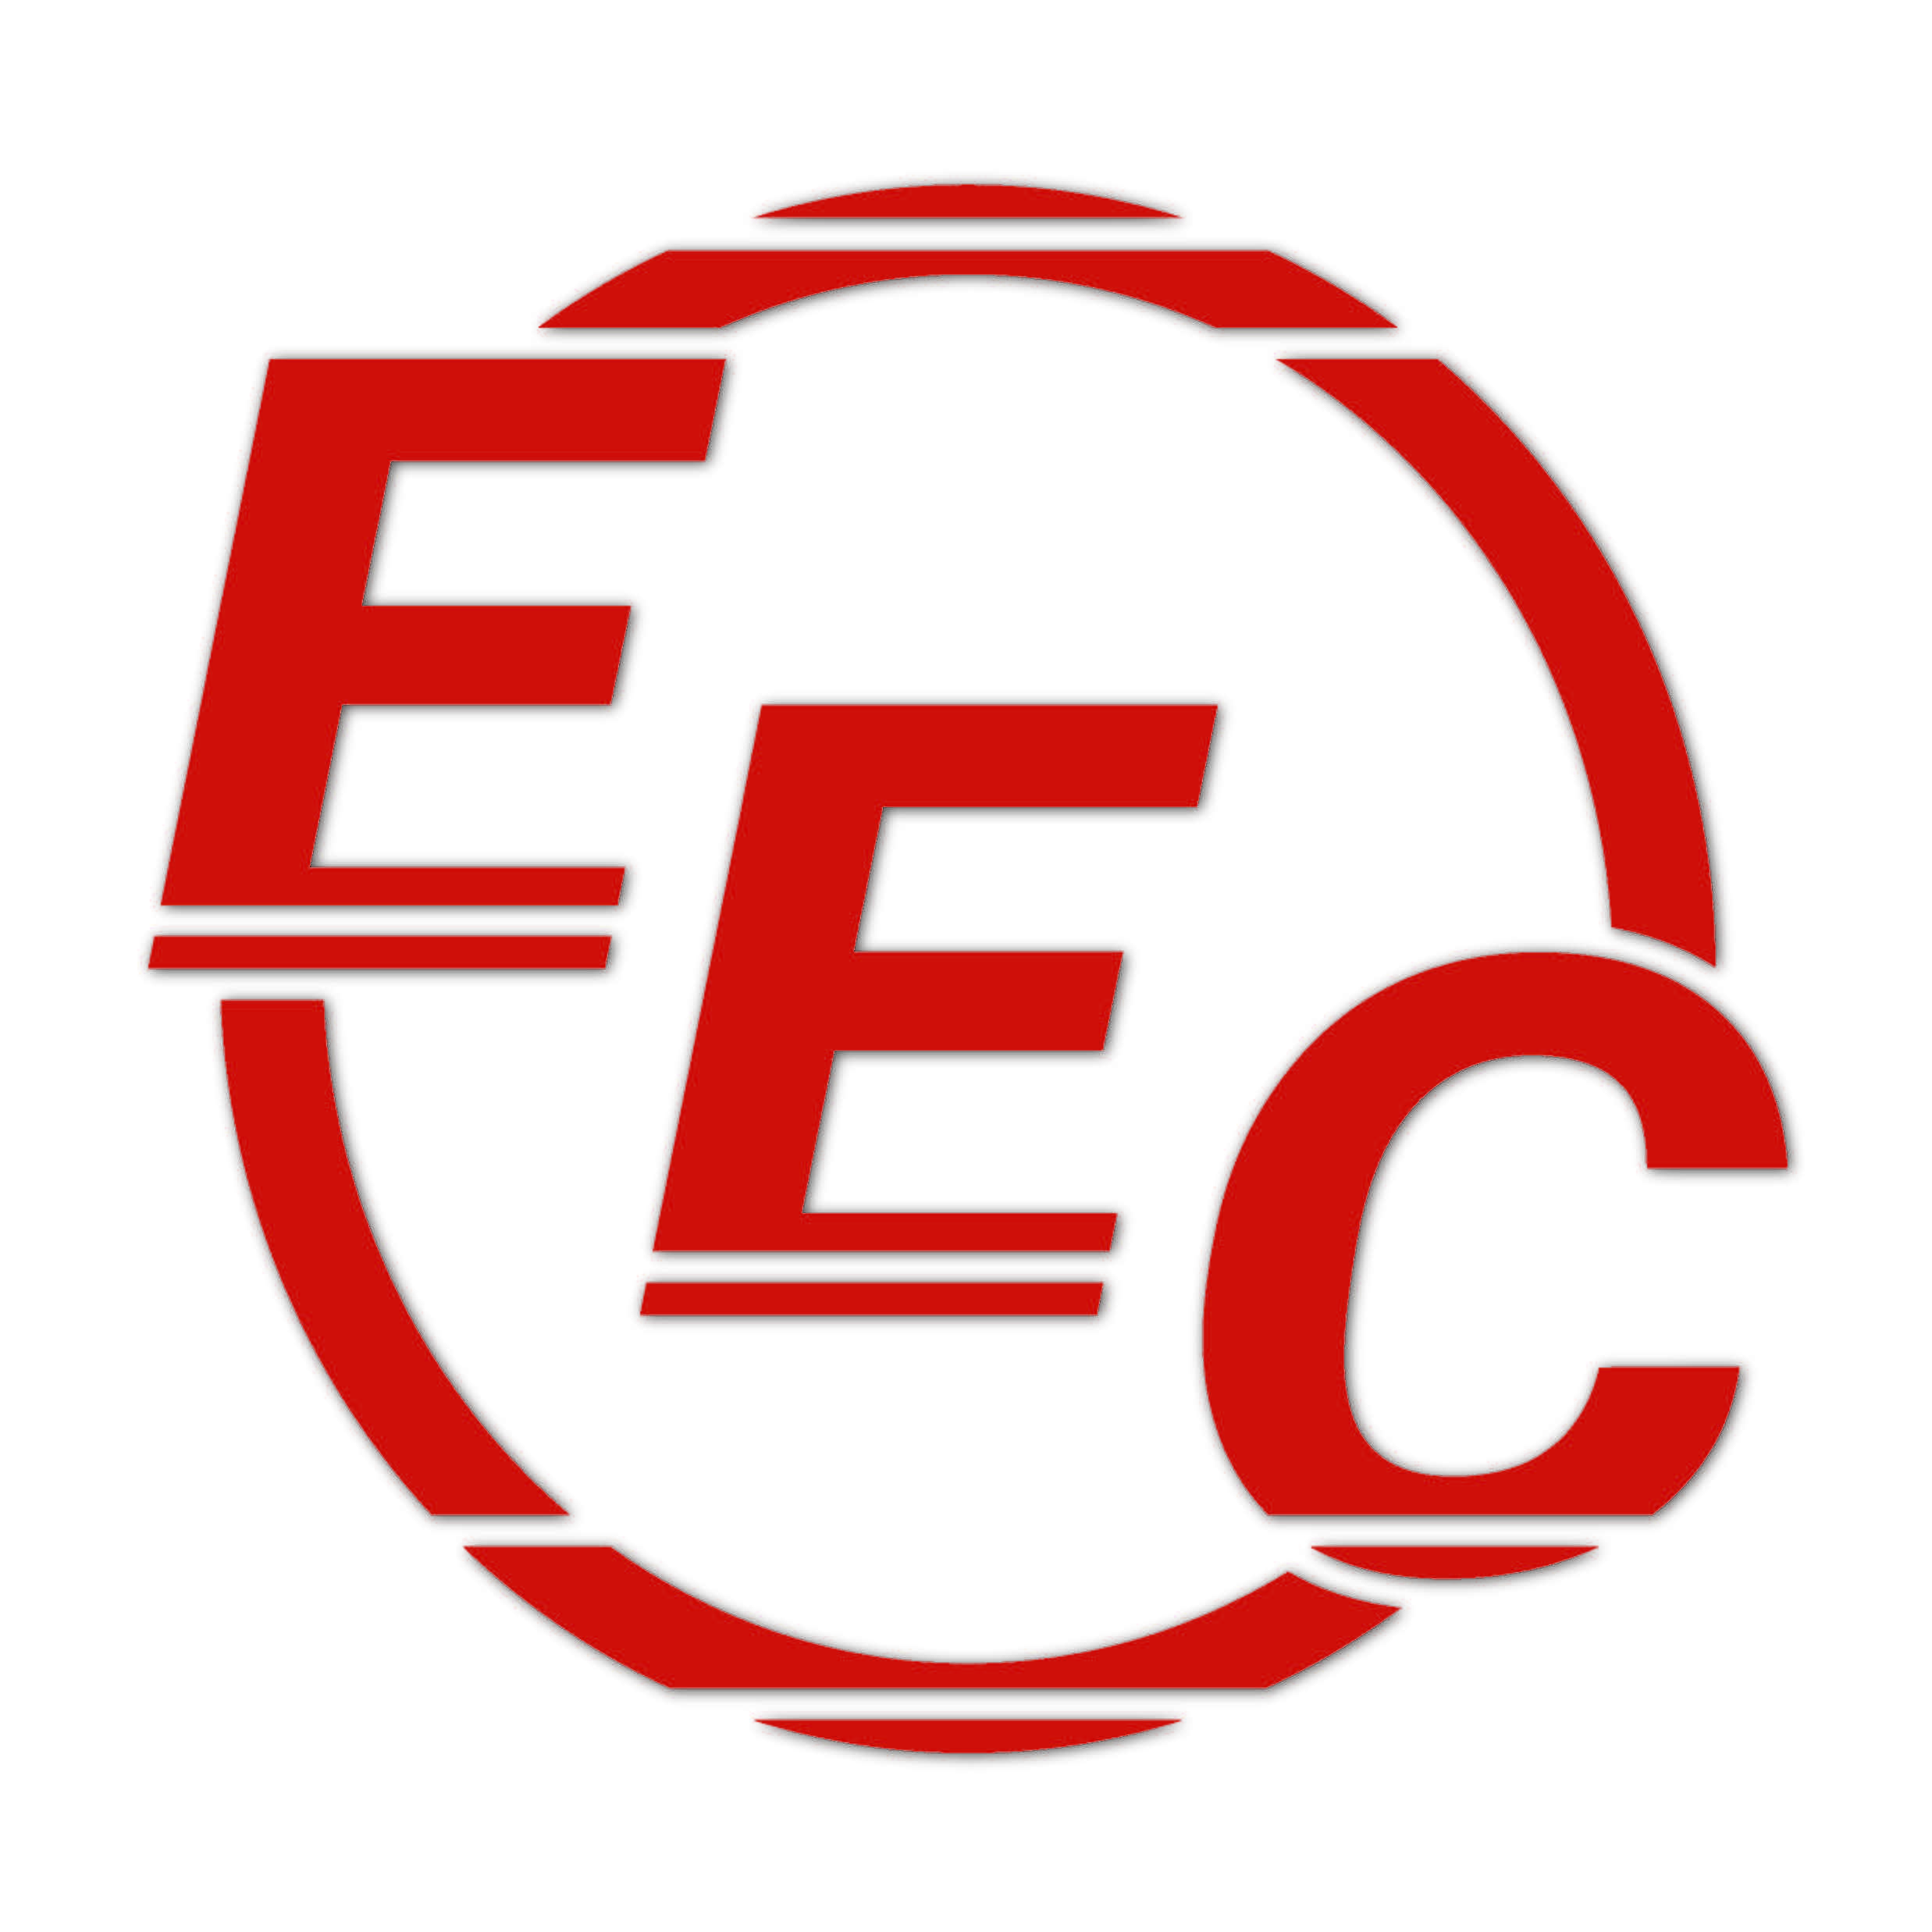 EEC Logo - EEC